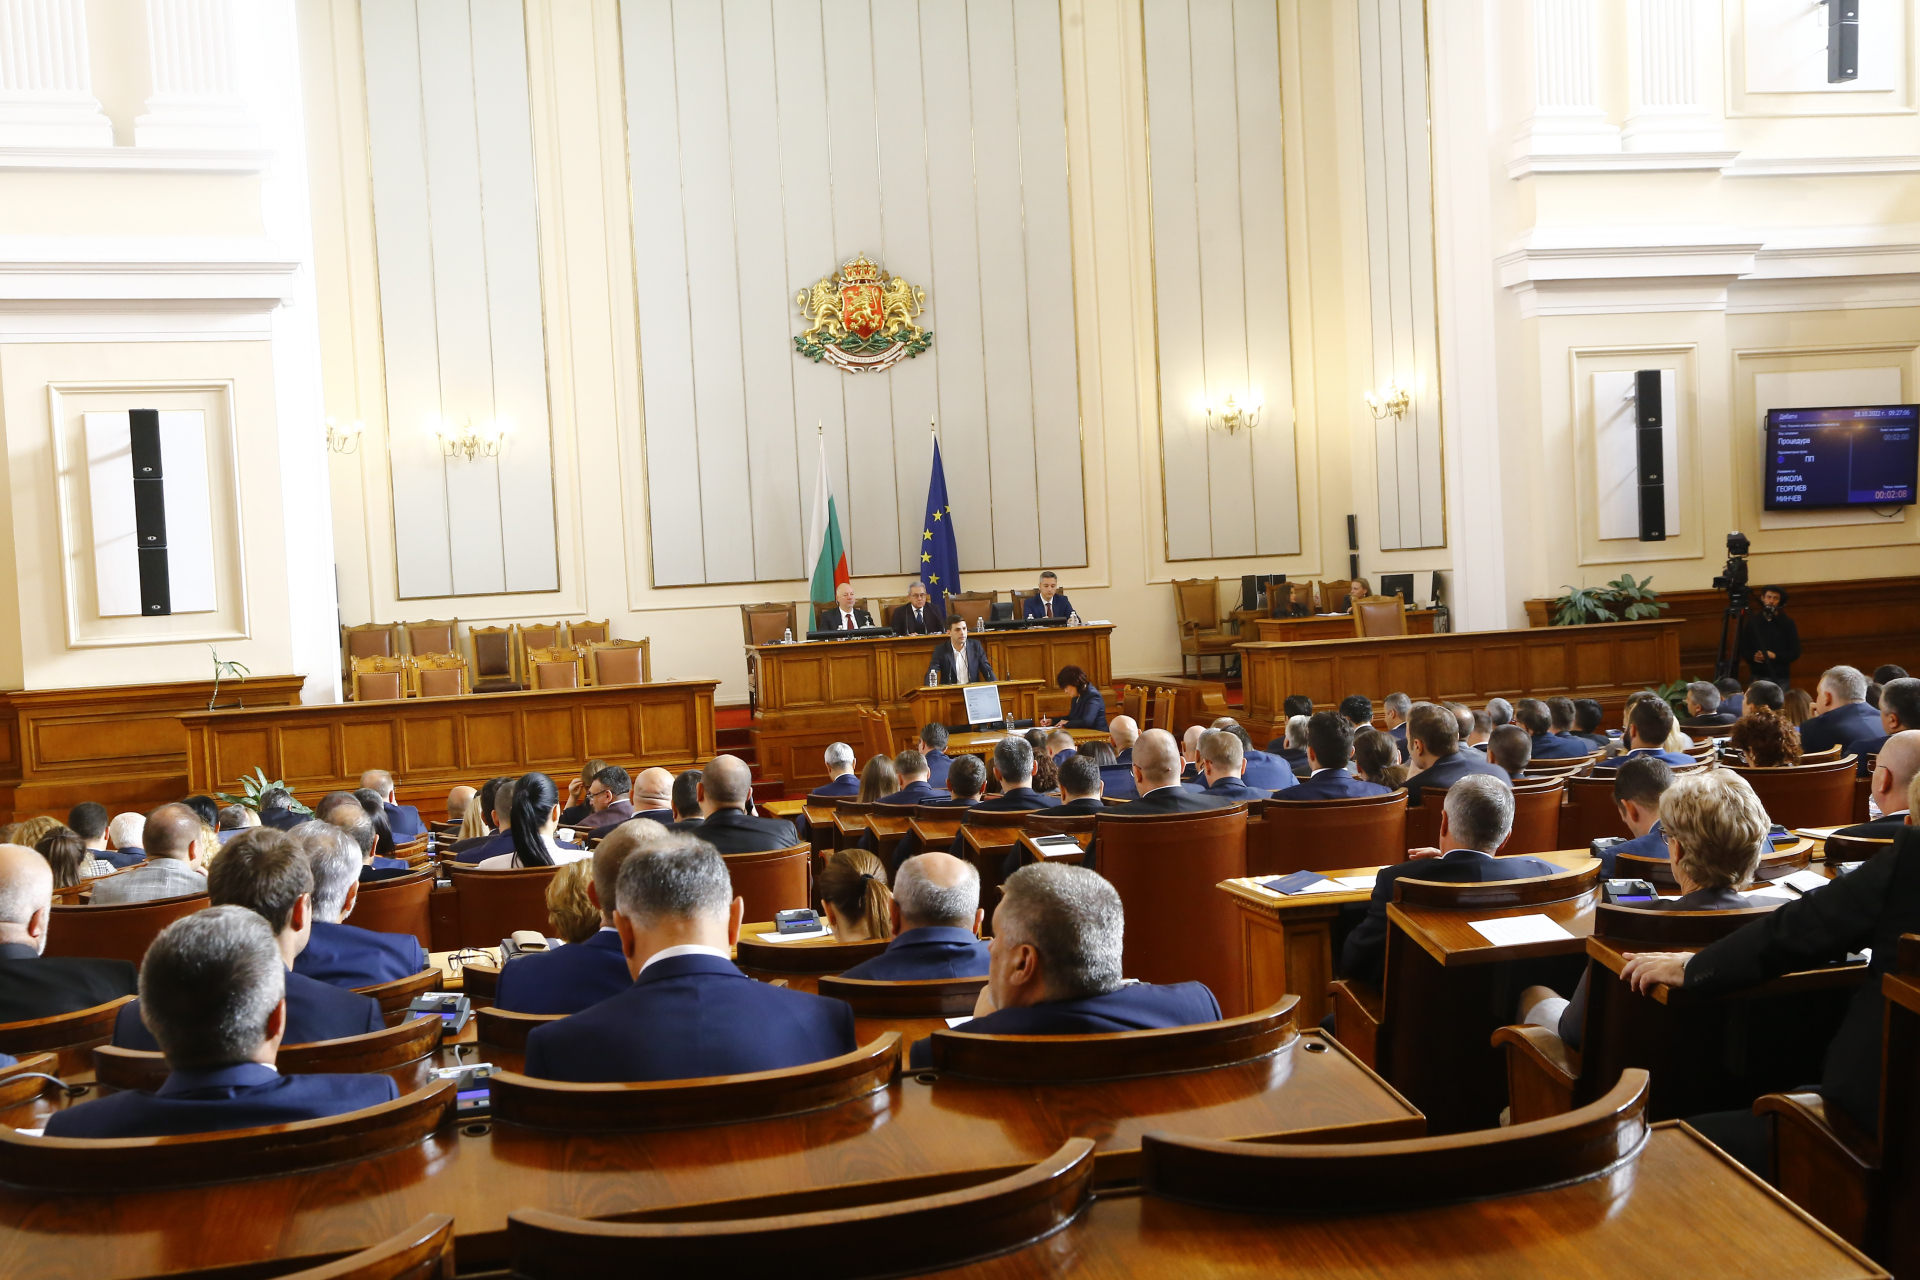 Волгин: С голямо умиление слушах сълзливите речи на евроатлантиците в парламента